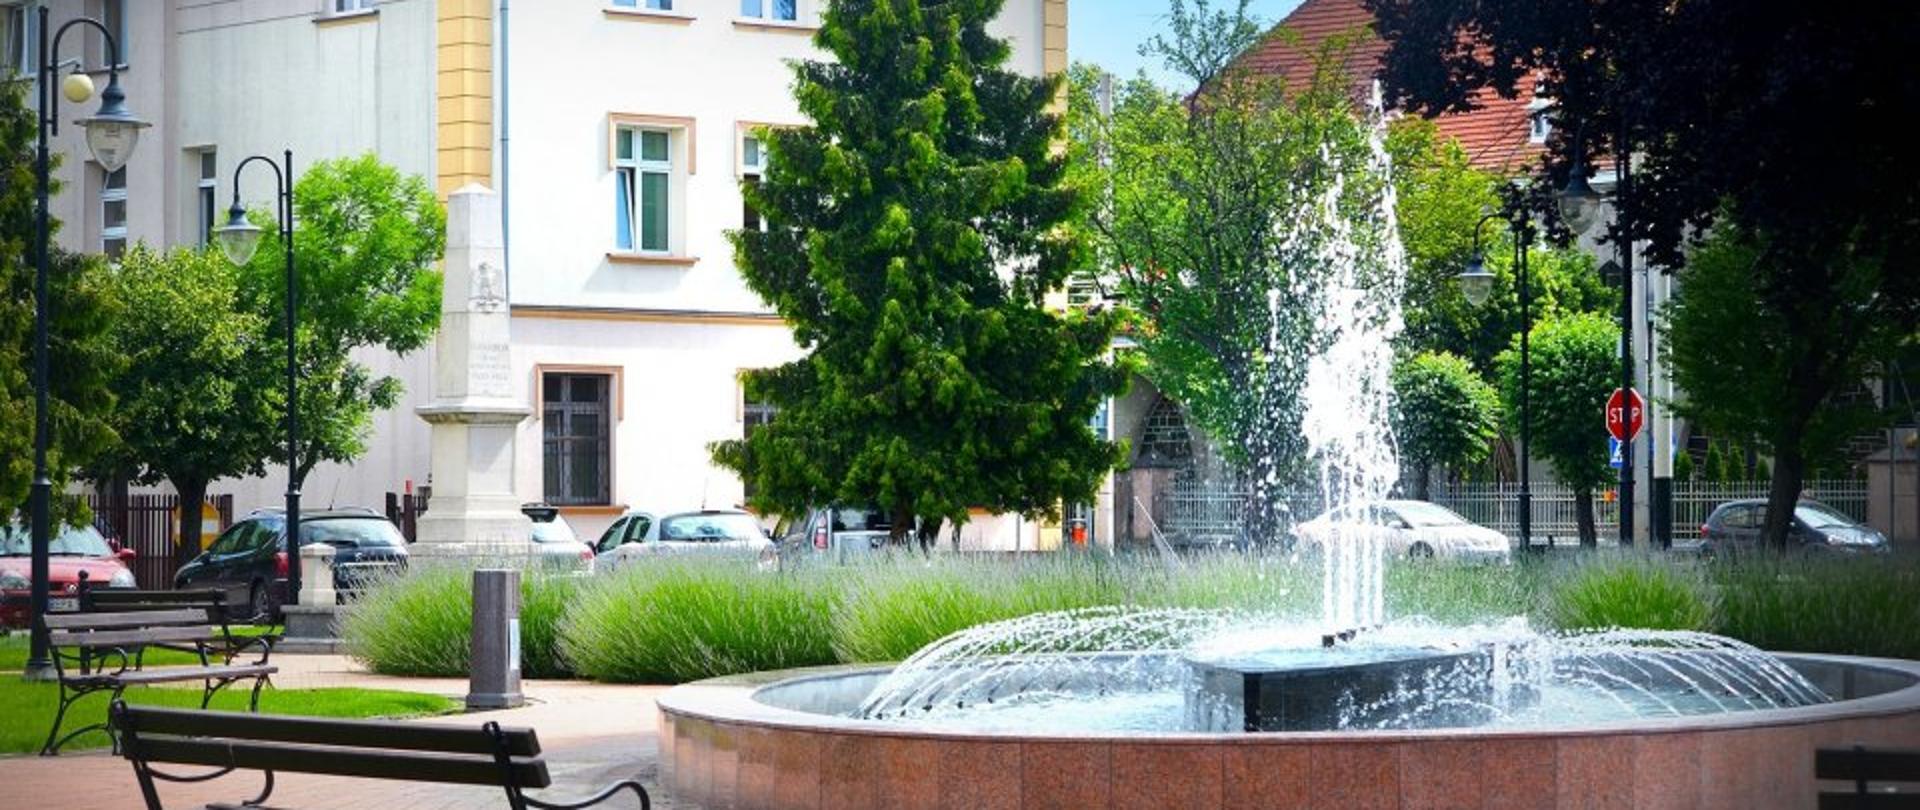 Na zdjęciu widać urząd miasta w Konstantynowie Łódzkim. Przed nim widać pomnik oraz fontannę z samego centrum Konstantynowa Łódzkiego.